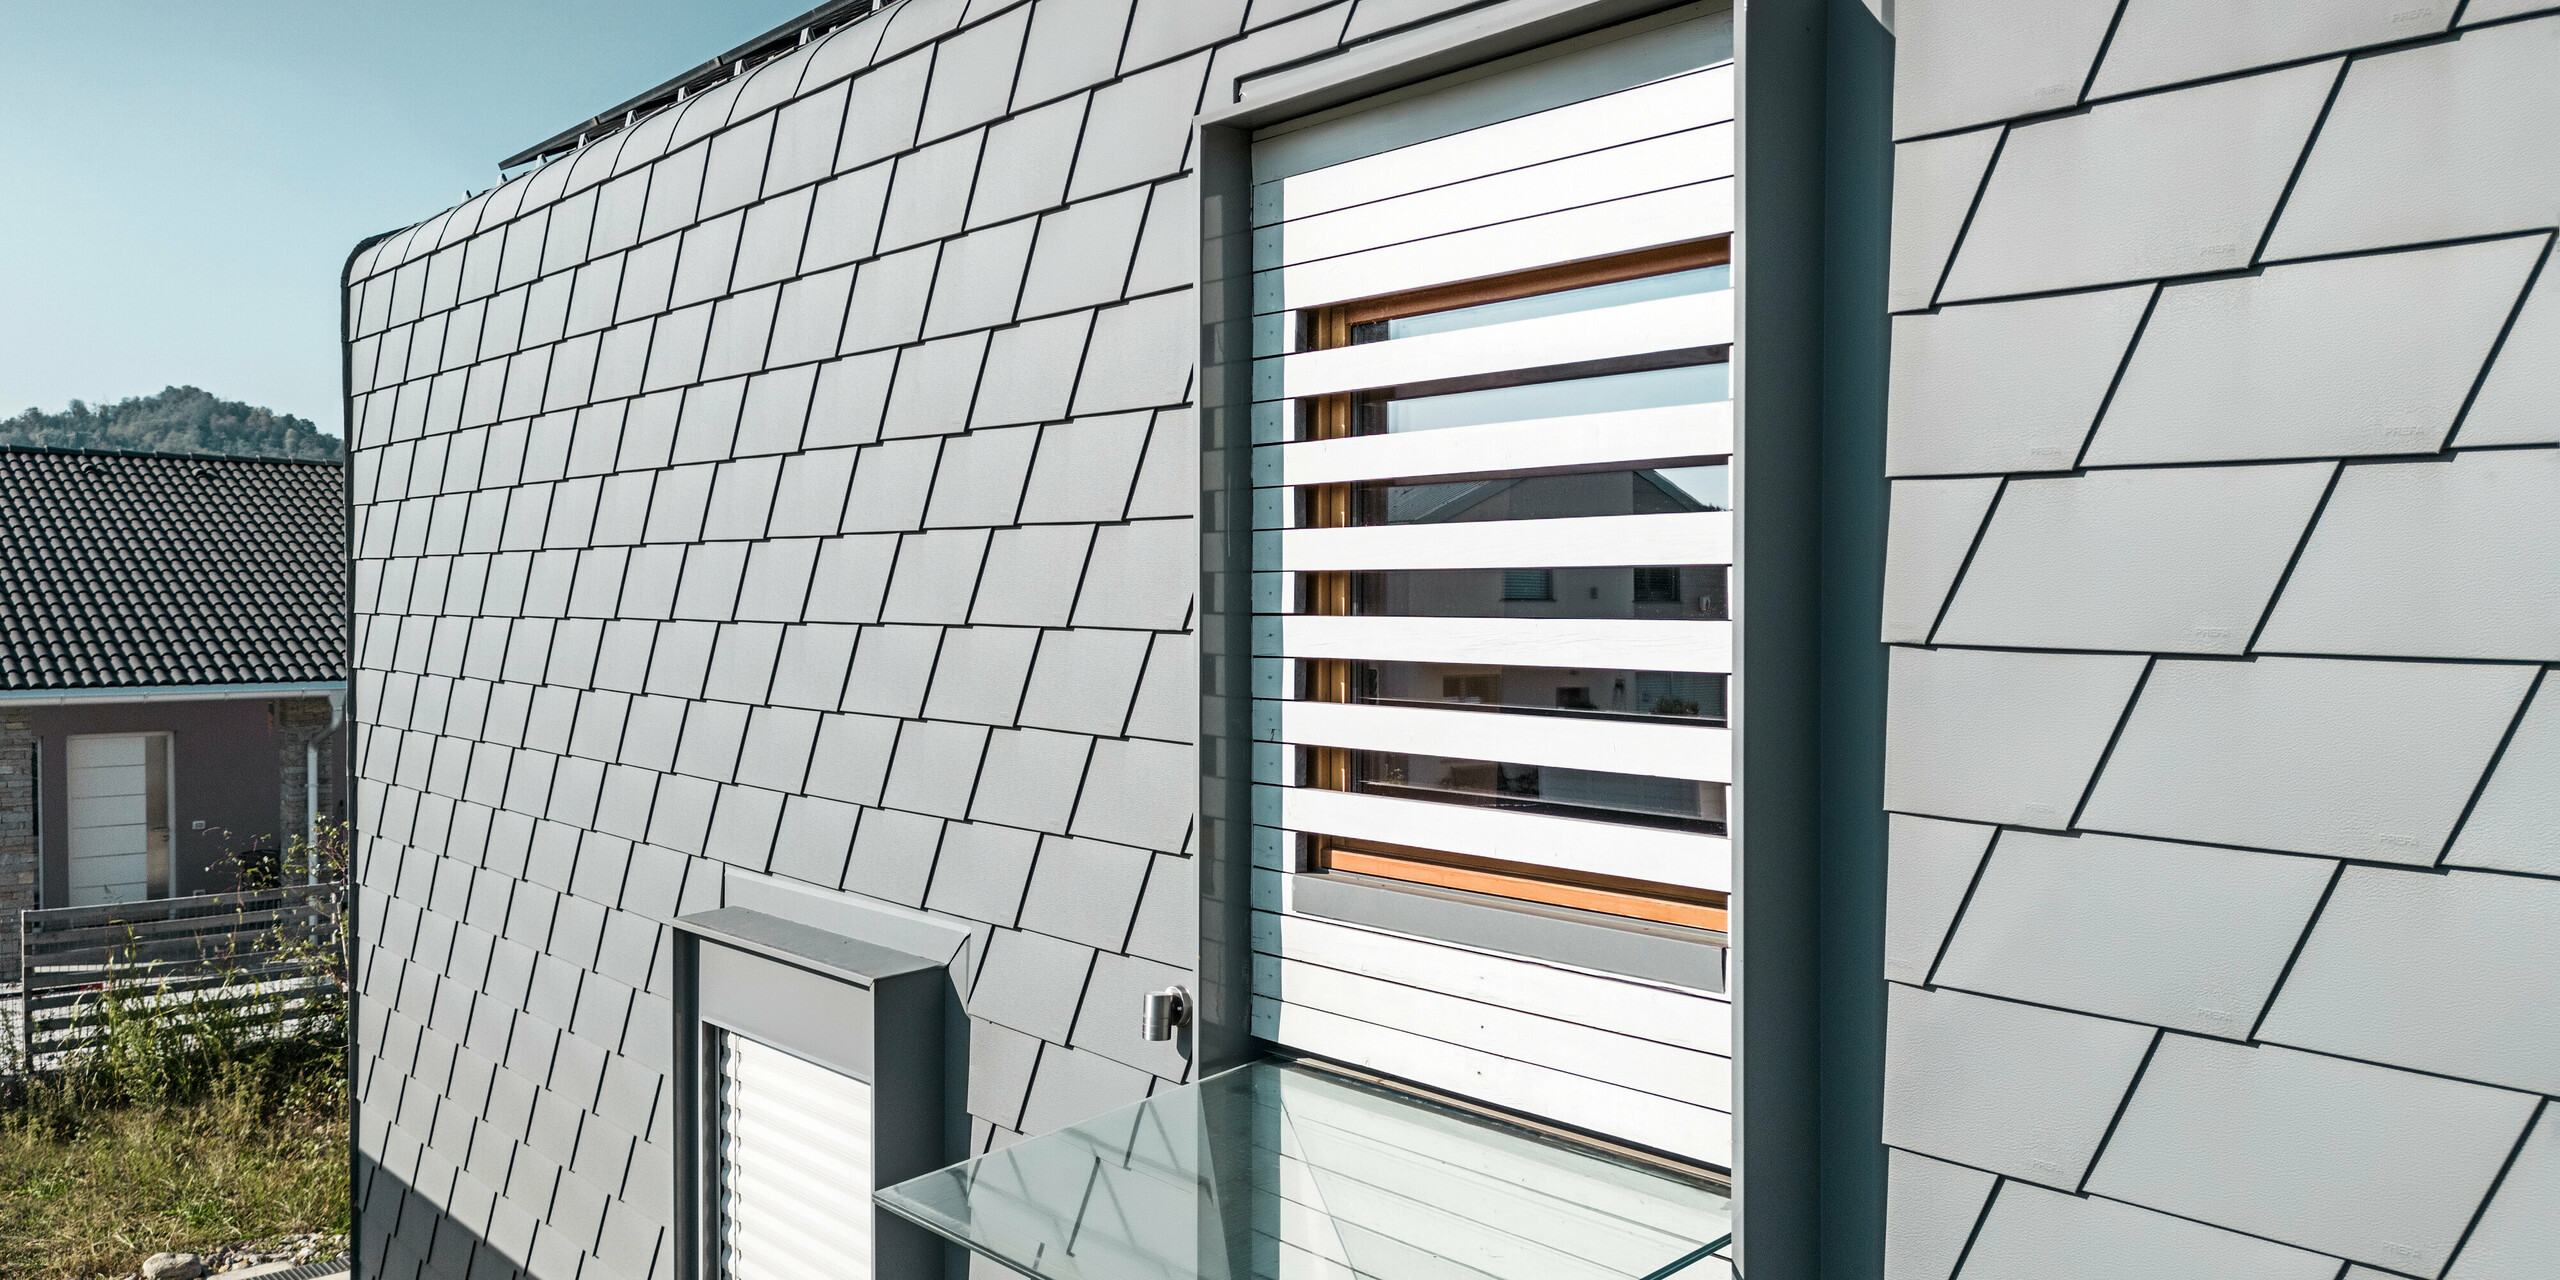 Detailaufnahme eines Fensters mit weißen Außenjalousien. Die Fassade des modernen Hauses ist mit PREFA Wandschindeln in der Farbe P.10 Hellgrau verkleidet. Das Dach ist mit PREFA Dachschindeln in P.10 Hellgrau eingedeckt. Die klare Geometrie der Schindeln ergibt eine strukturierte Oberfläche, die durch die natürlichen Schattenwürfe zusätzlich betont wird. Das Fenster mit den Außenjalousien durchbricht das Muster und fügt ein warmes, natürliches Element in das kühle Grau der Schindeln ein.